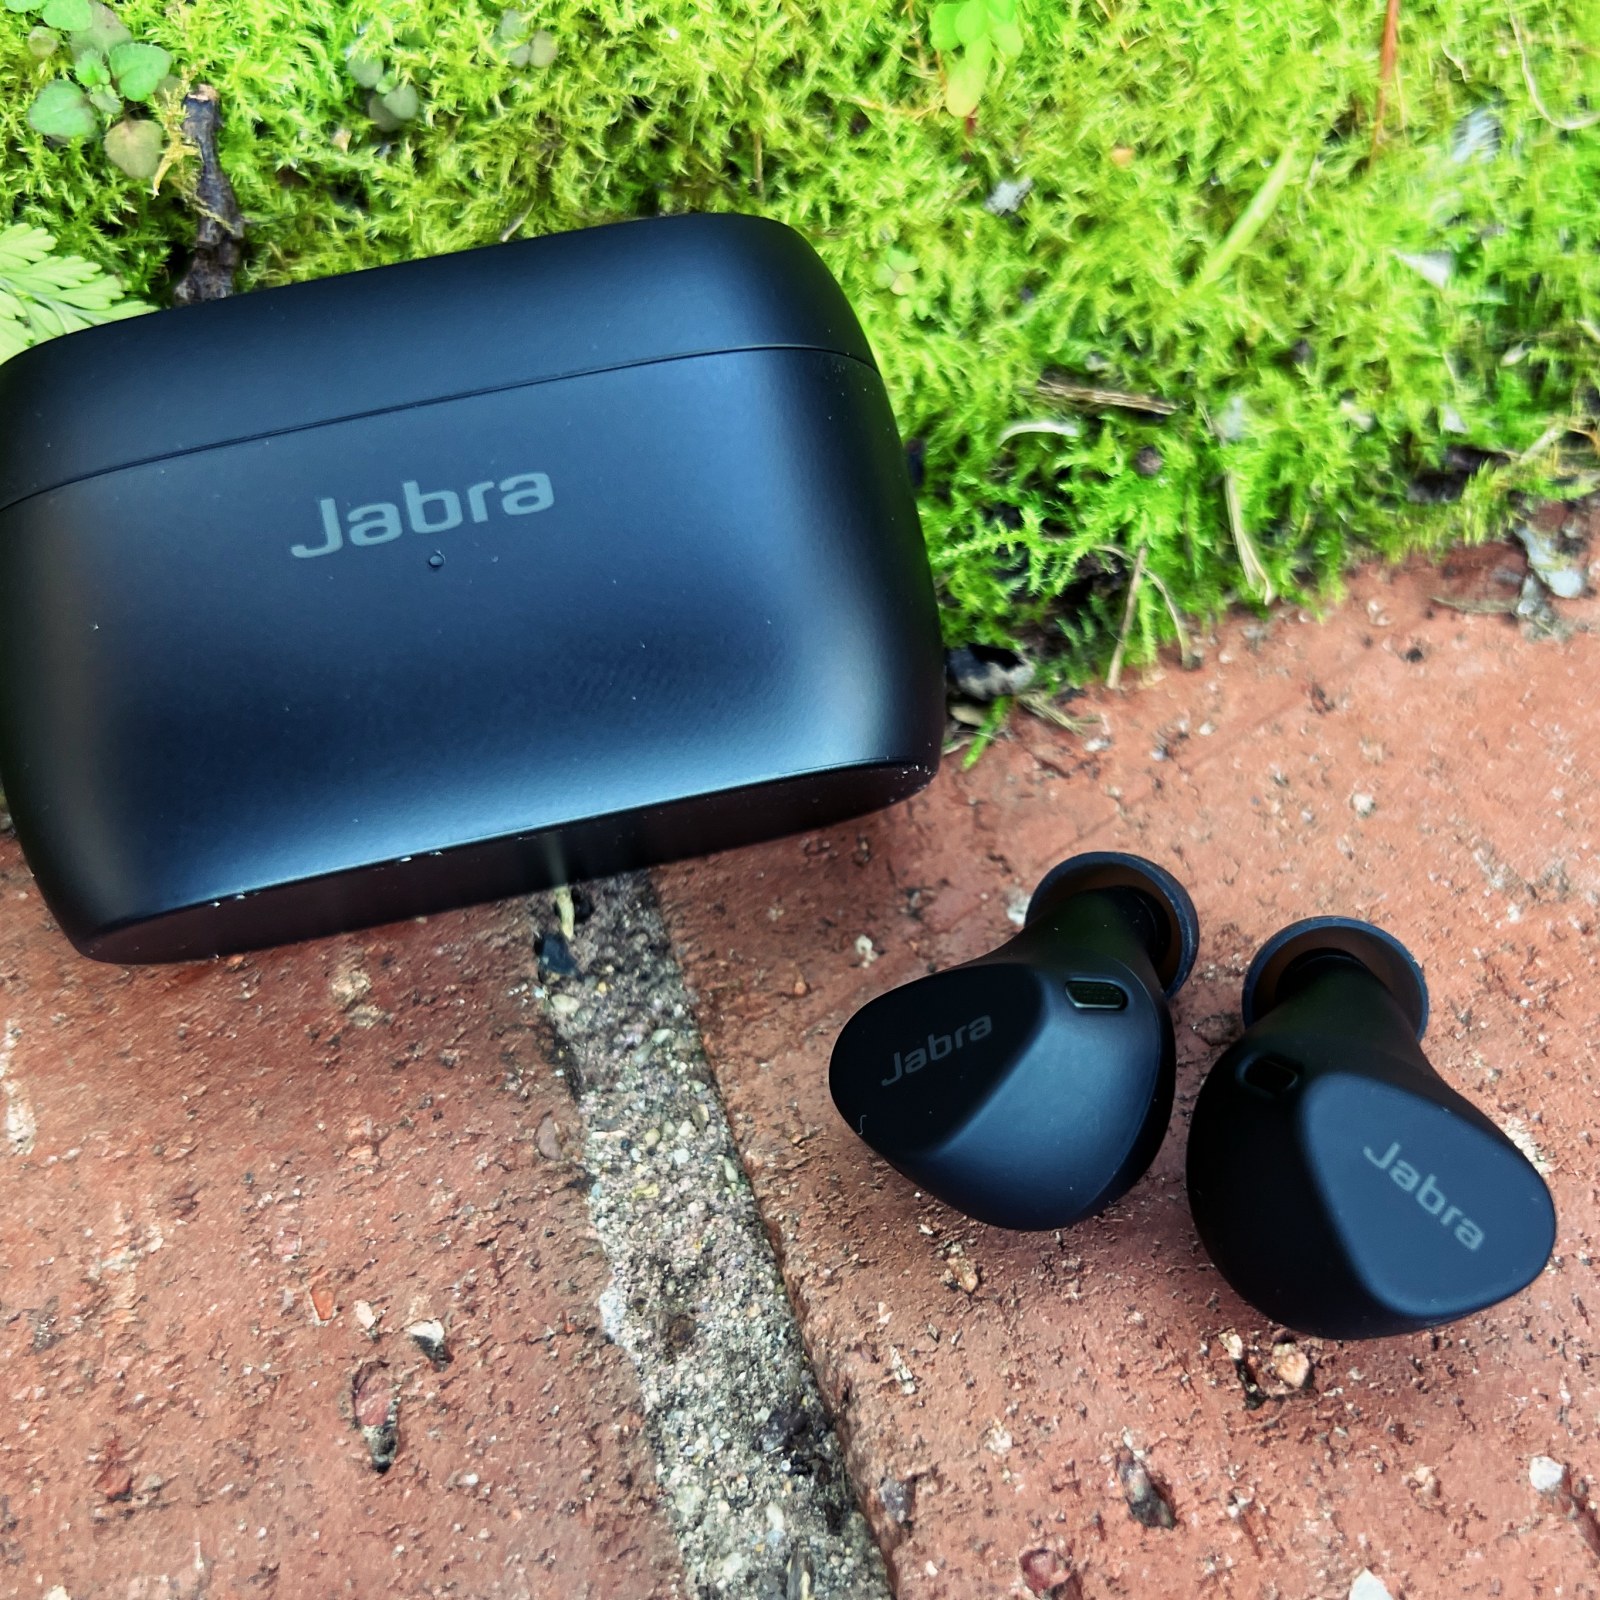 Jabra Elite 4 Active review: A huge comfort upgrade